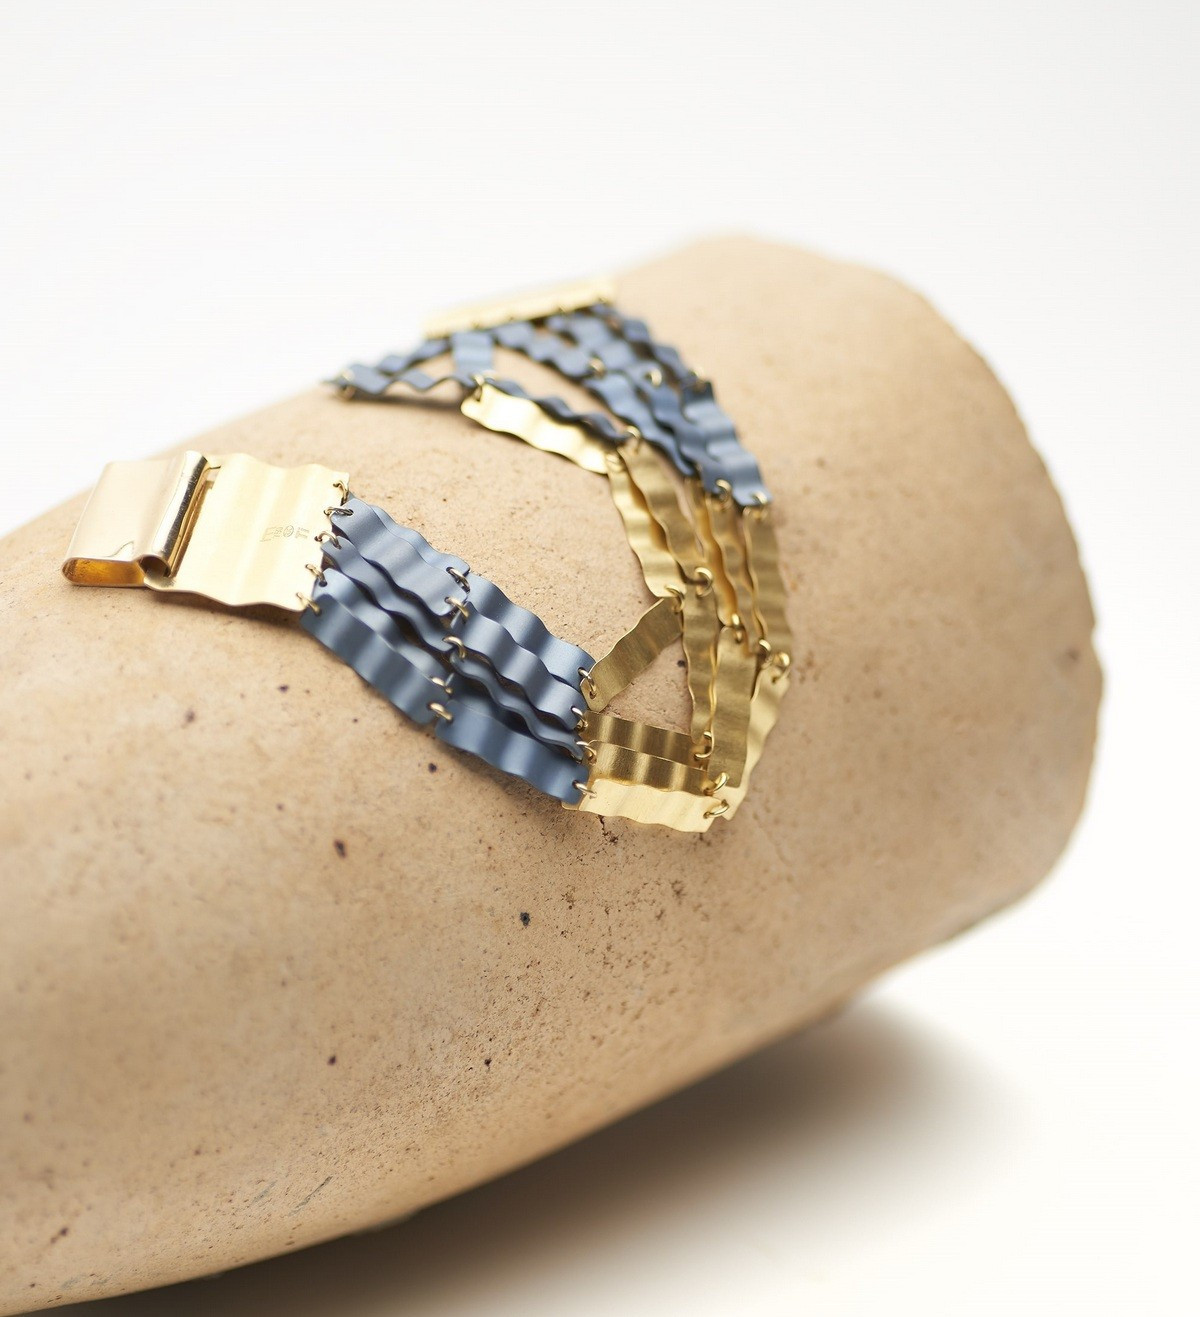 18k gold and titanium bracelet Aigua 5 bands 19cm